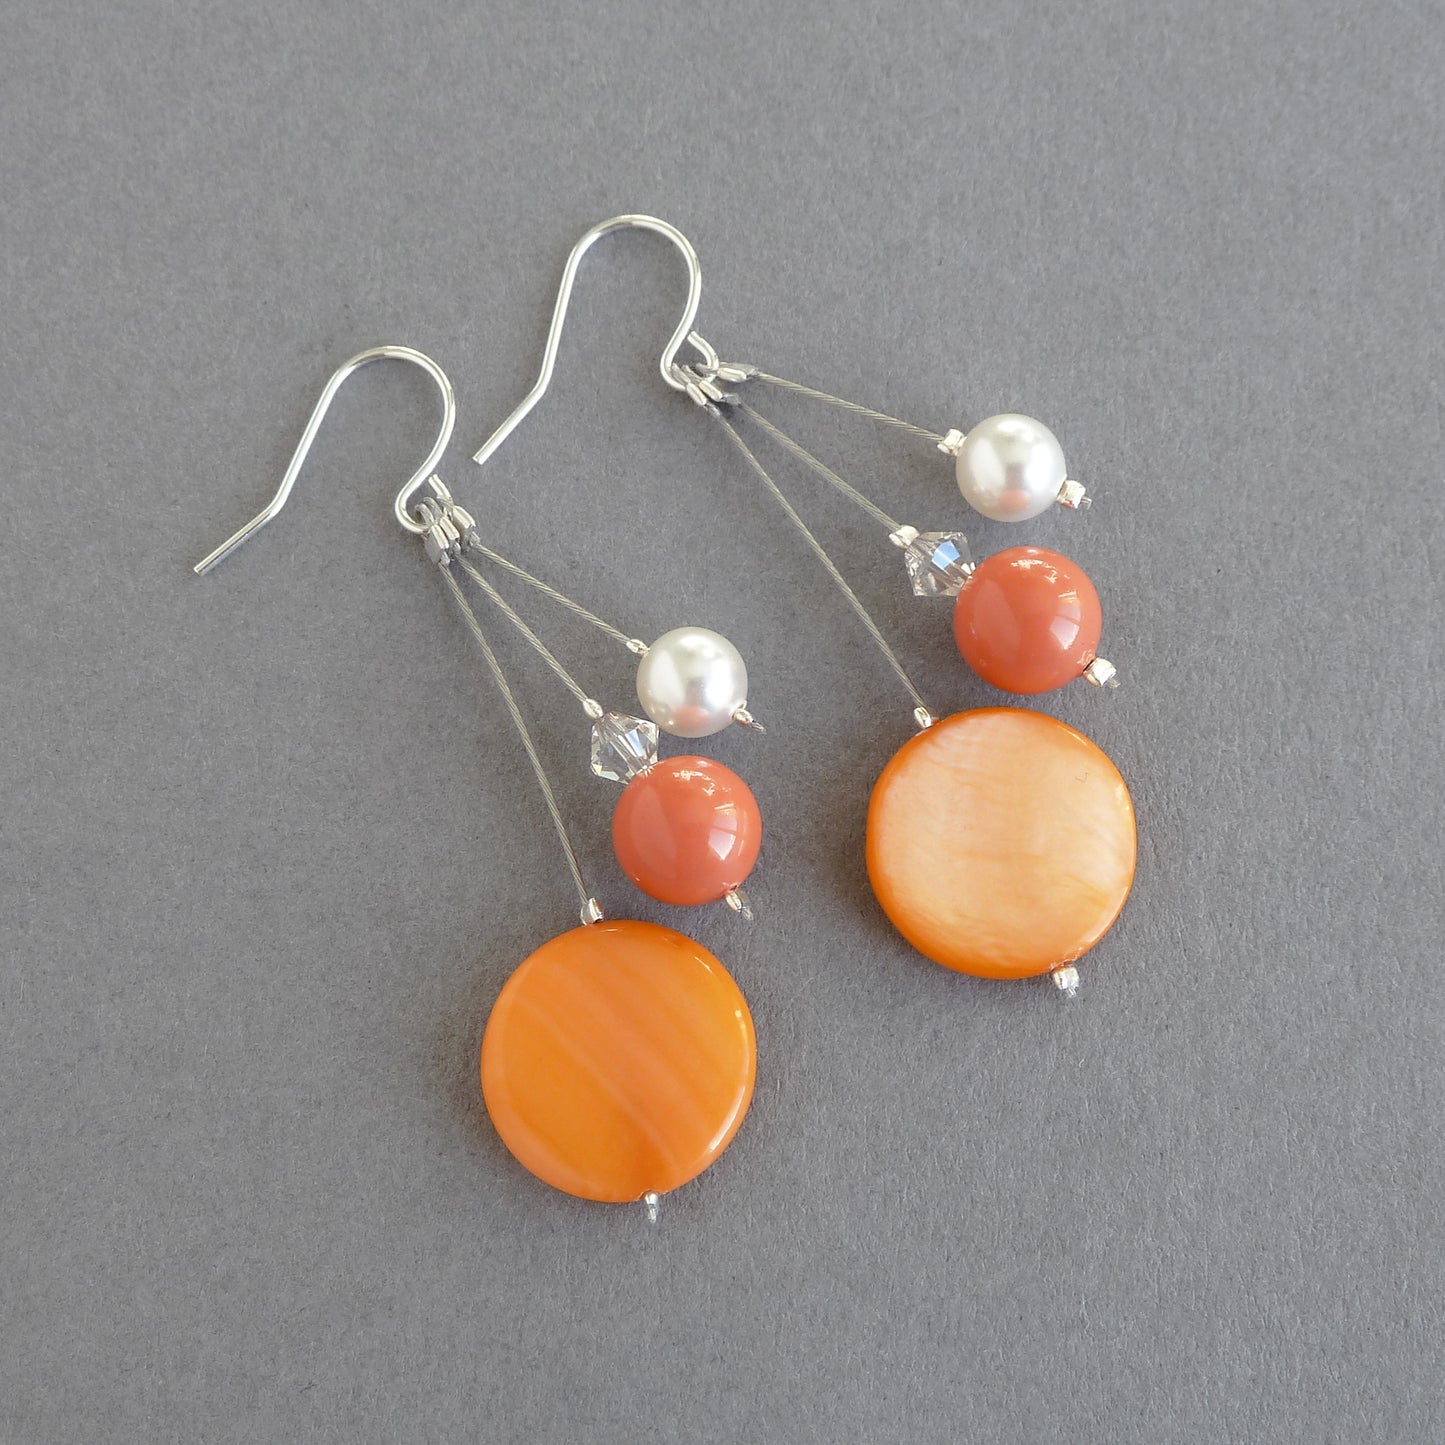 Orange dangly earrings